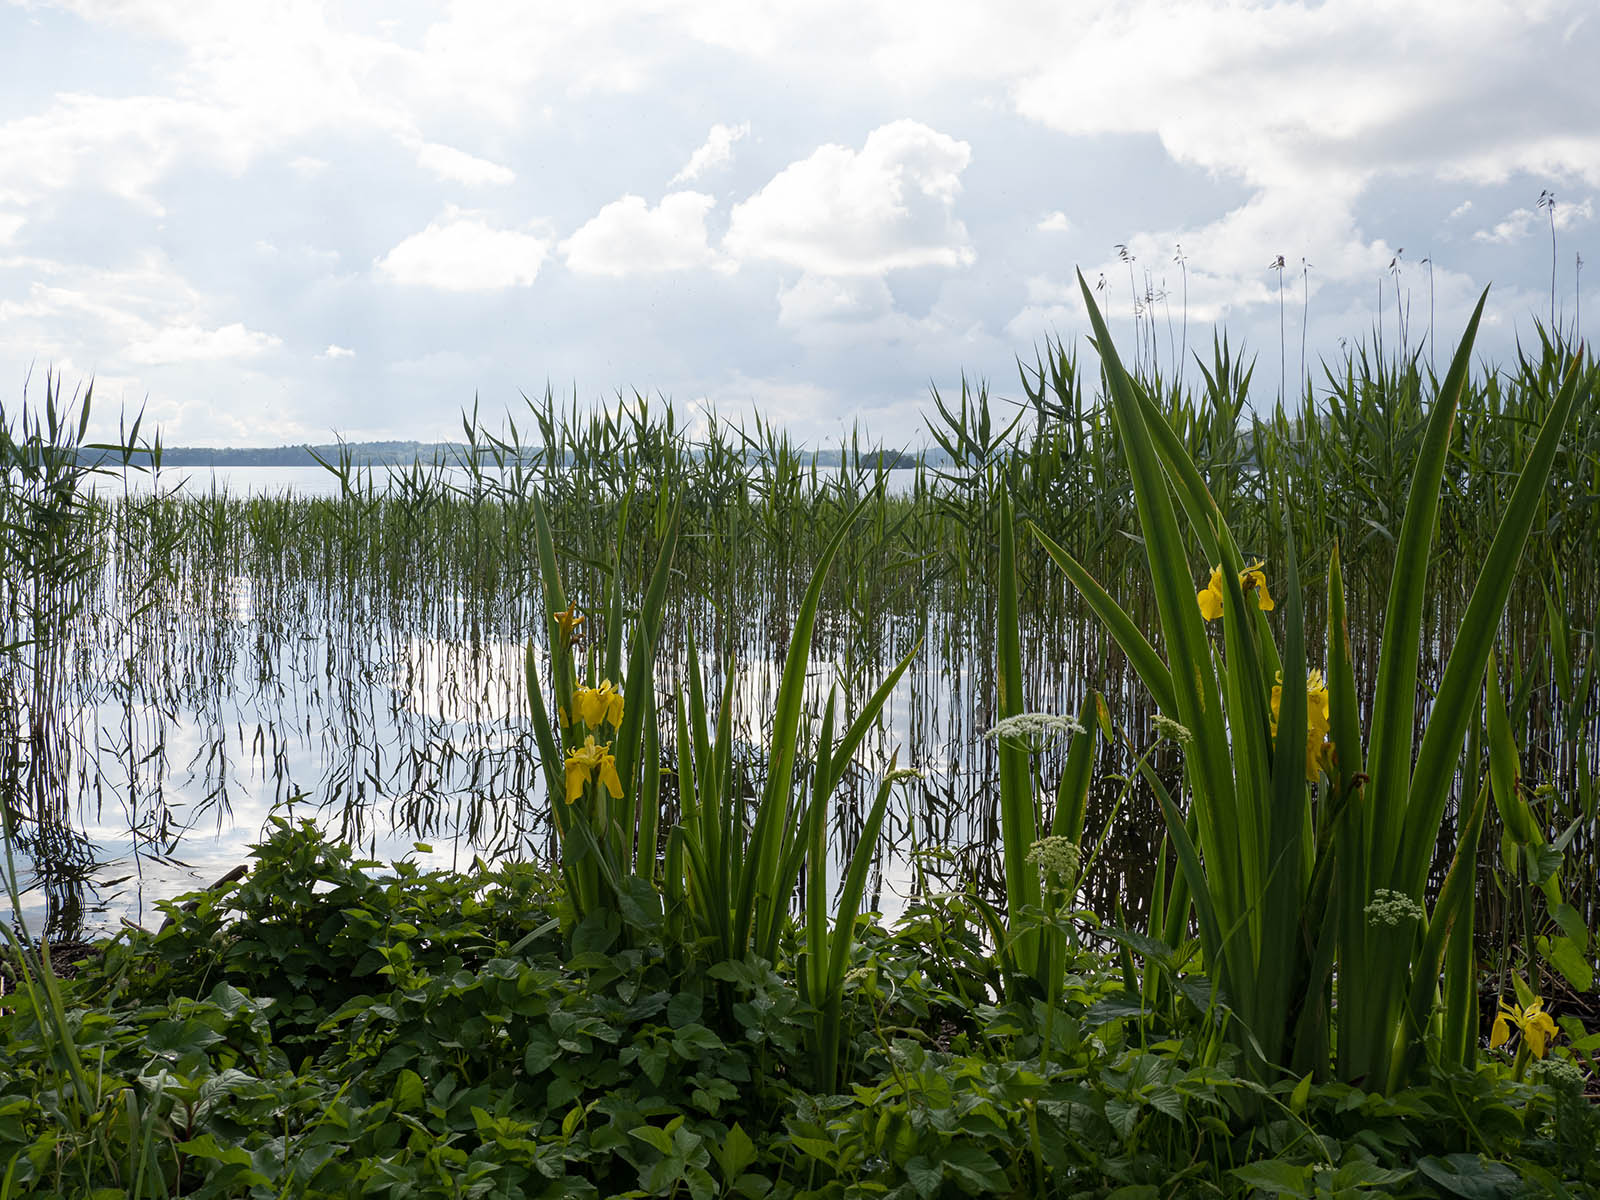 Ирис ложноаировый (Iris pseudacorus) на берегу озера M?laren, Стокгольм, июнь 2020 года. Автор фото: Сутормина Марина